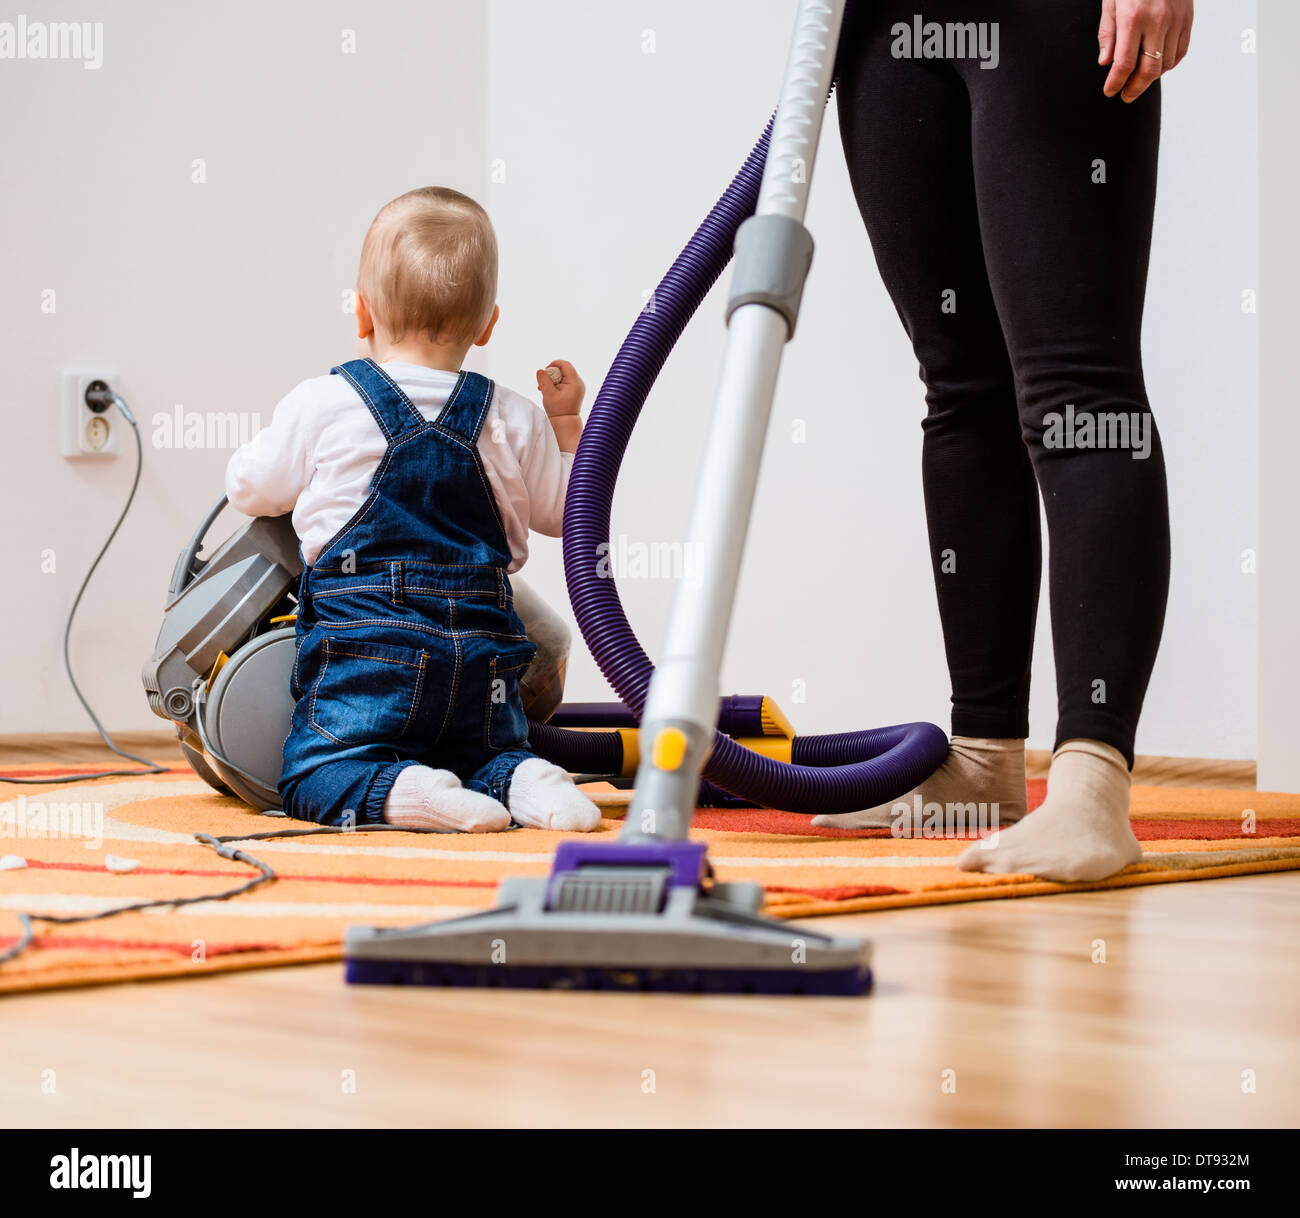 Aufräumen der Zimmer - Frau mit Staubsauger, Baby-sitting auf Etage Stockfoto